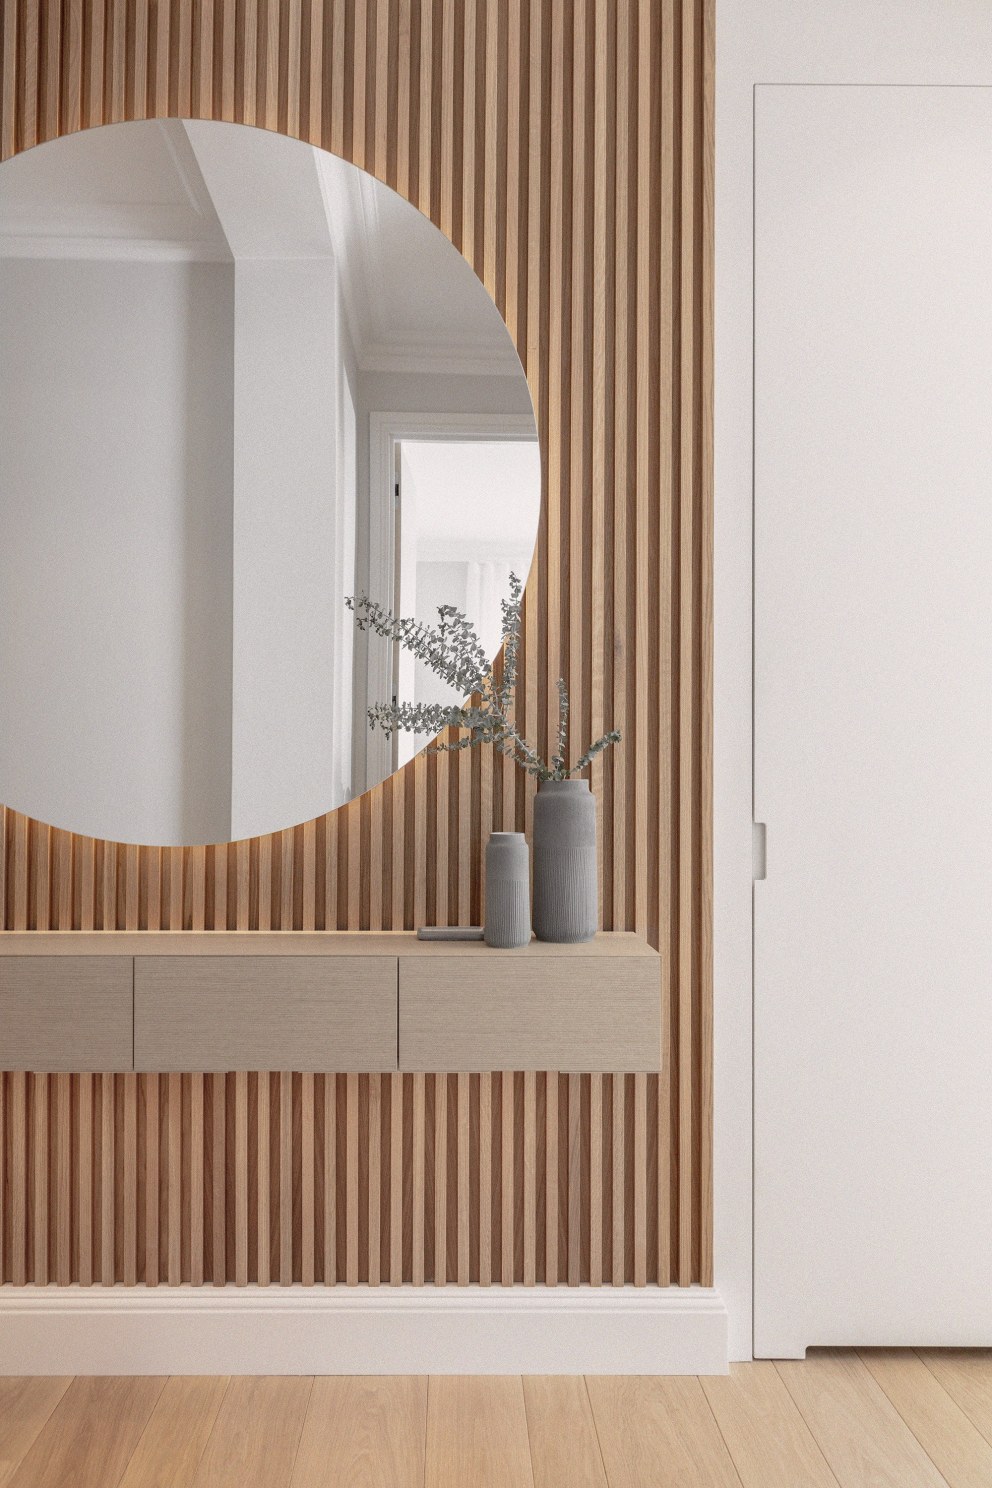 Chelsea - Refurbishment & FF&E | Bespoke entrance cladding and mirror | Interior Designers